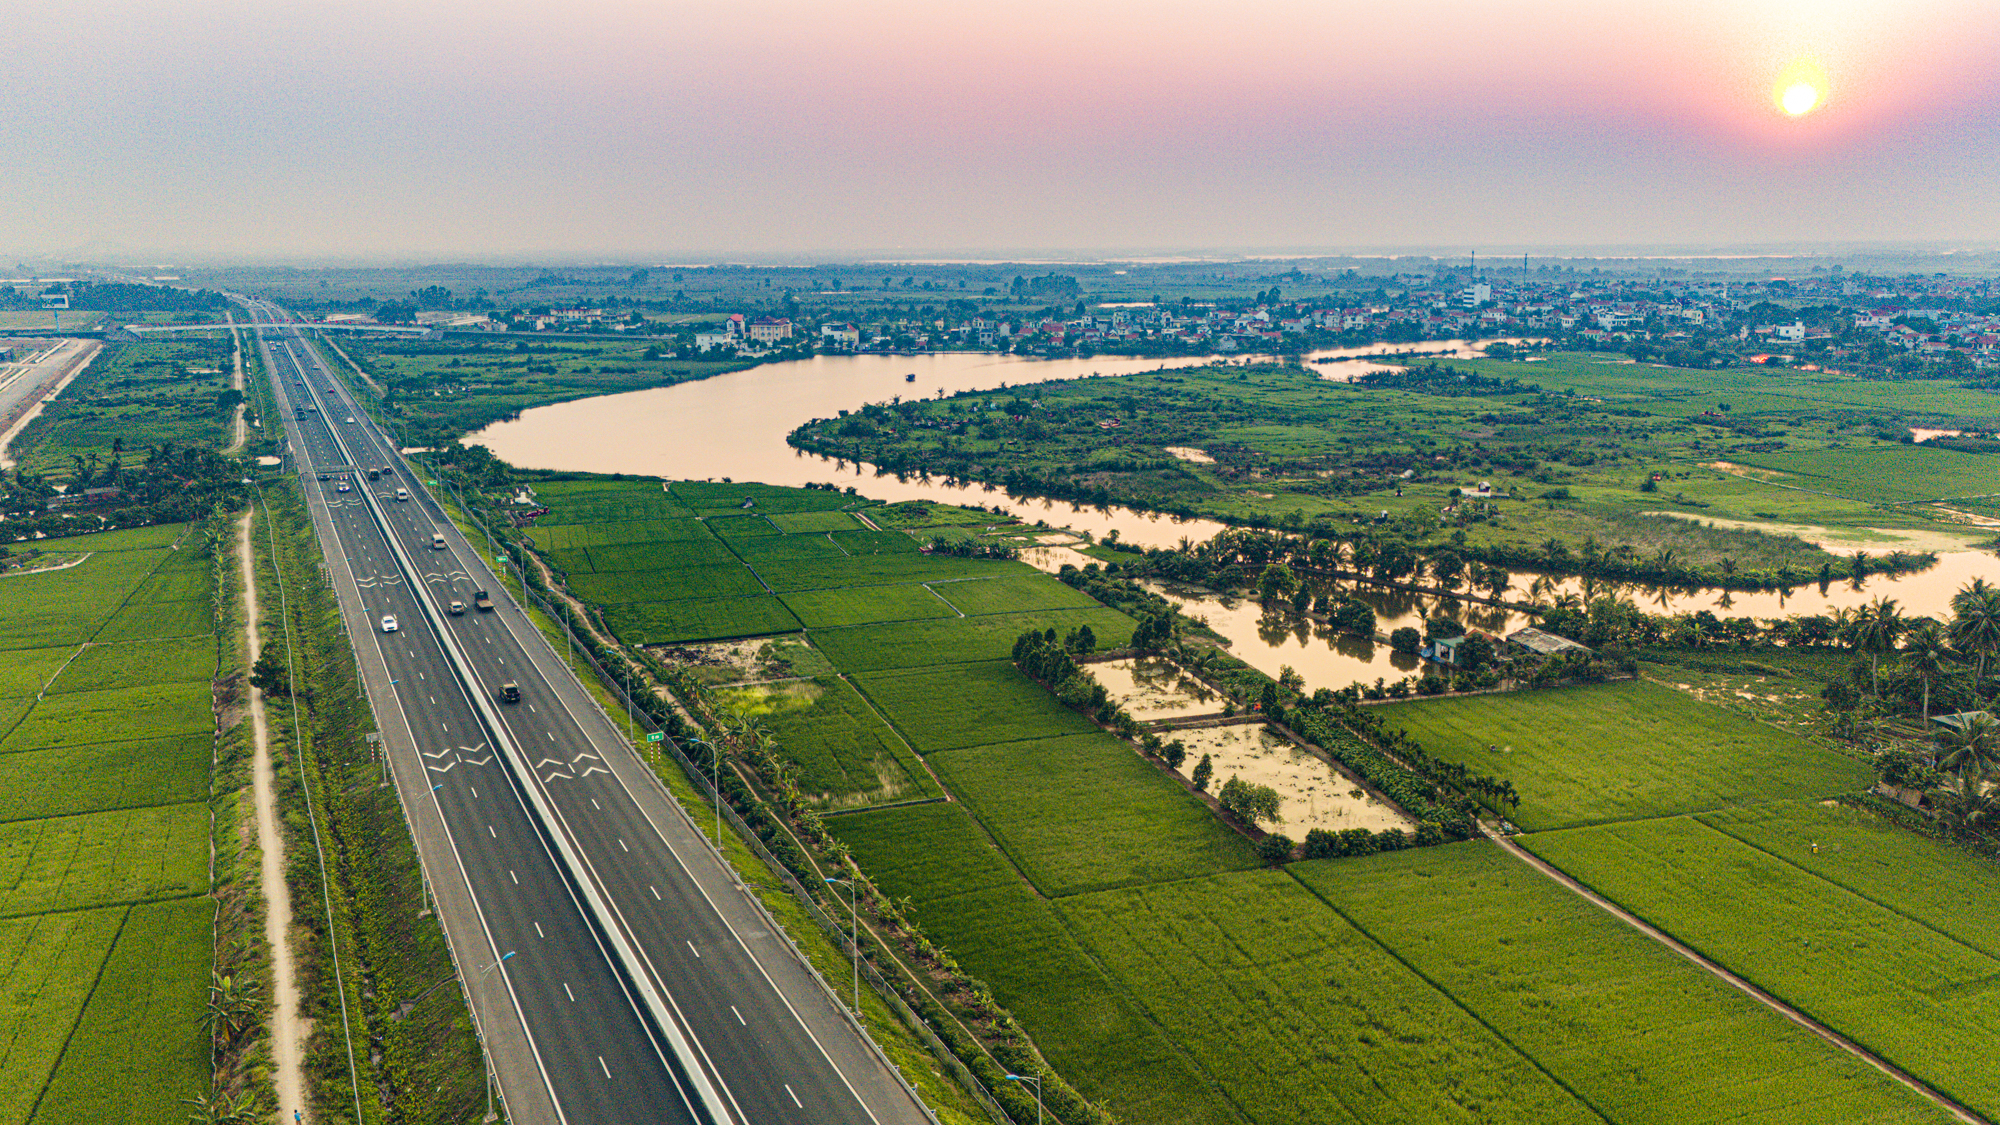 Khu vực sẽ làm đường cao tốc giáp Hà Nội, kết nối với cây cầu mới vượt sông Hồng- Ảnh 3.